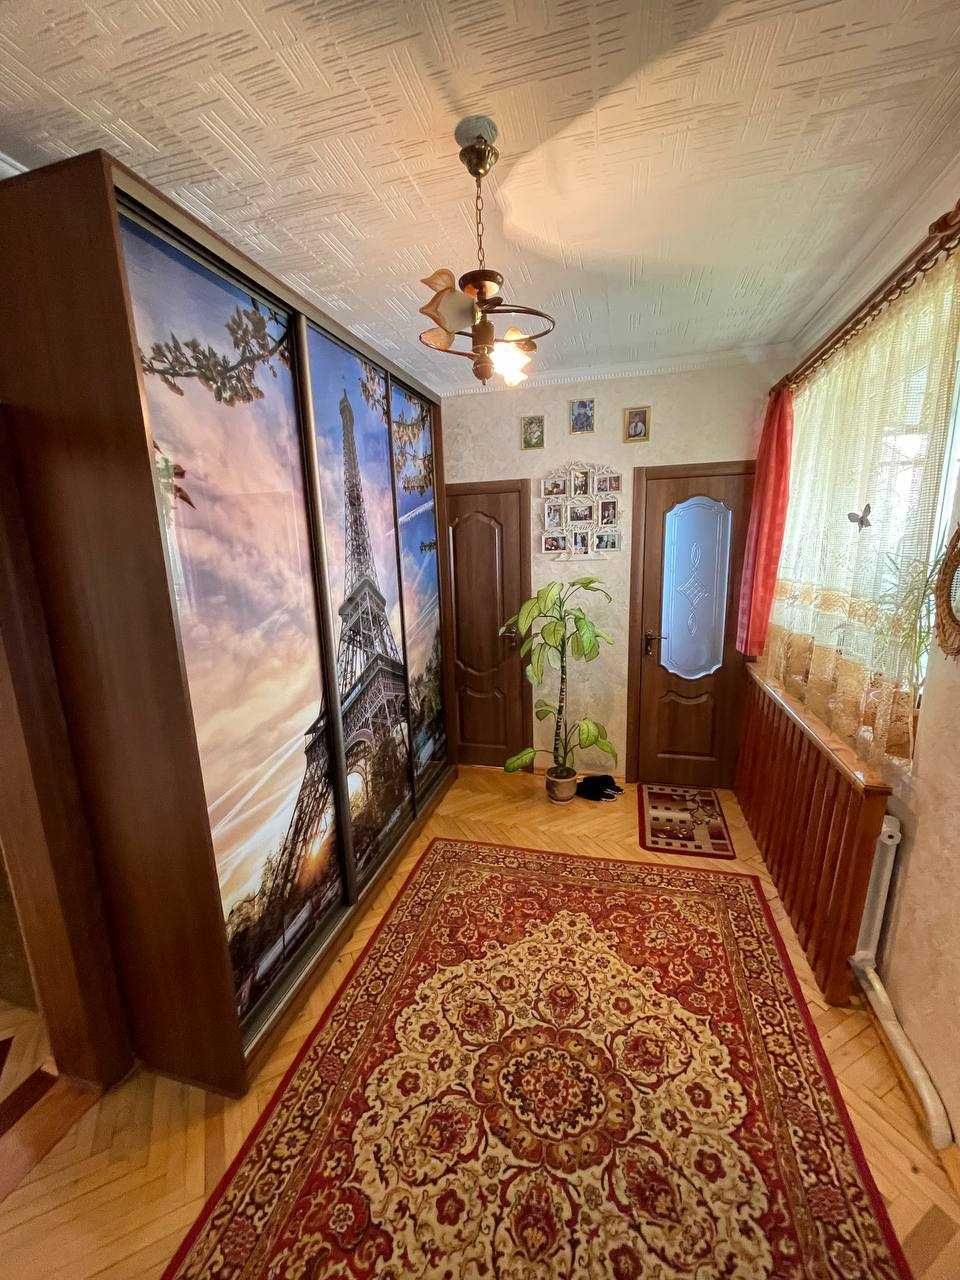 Продається двоповерховий будинок у Мостиськах